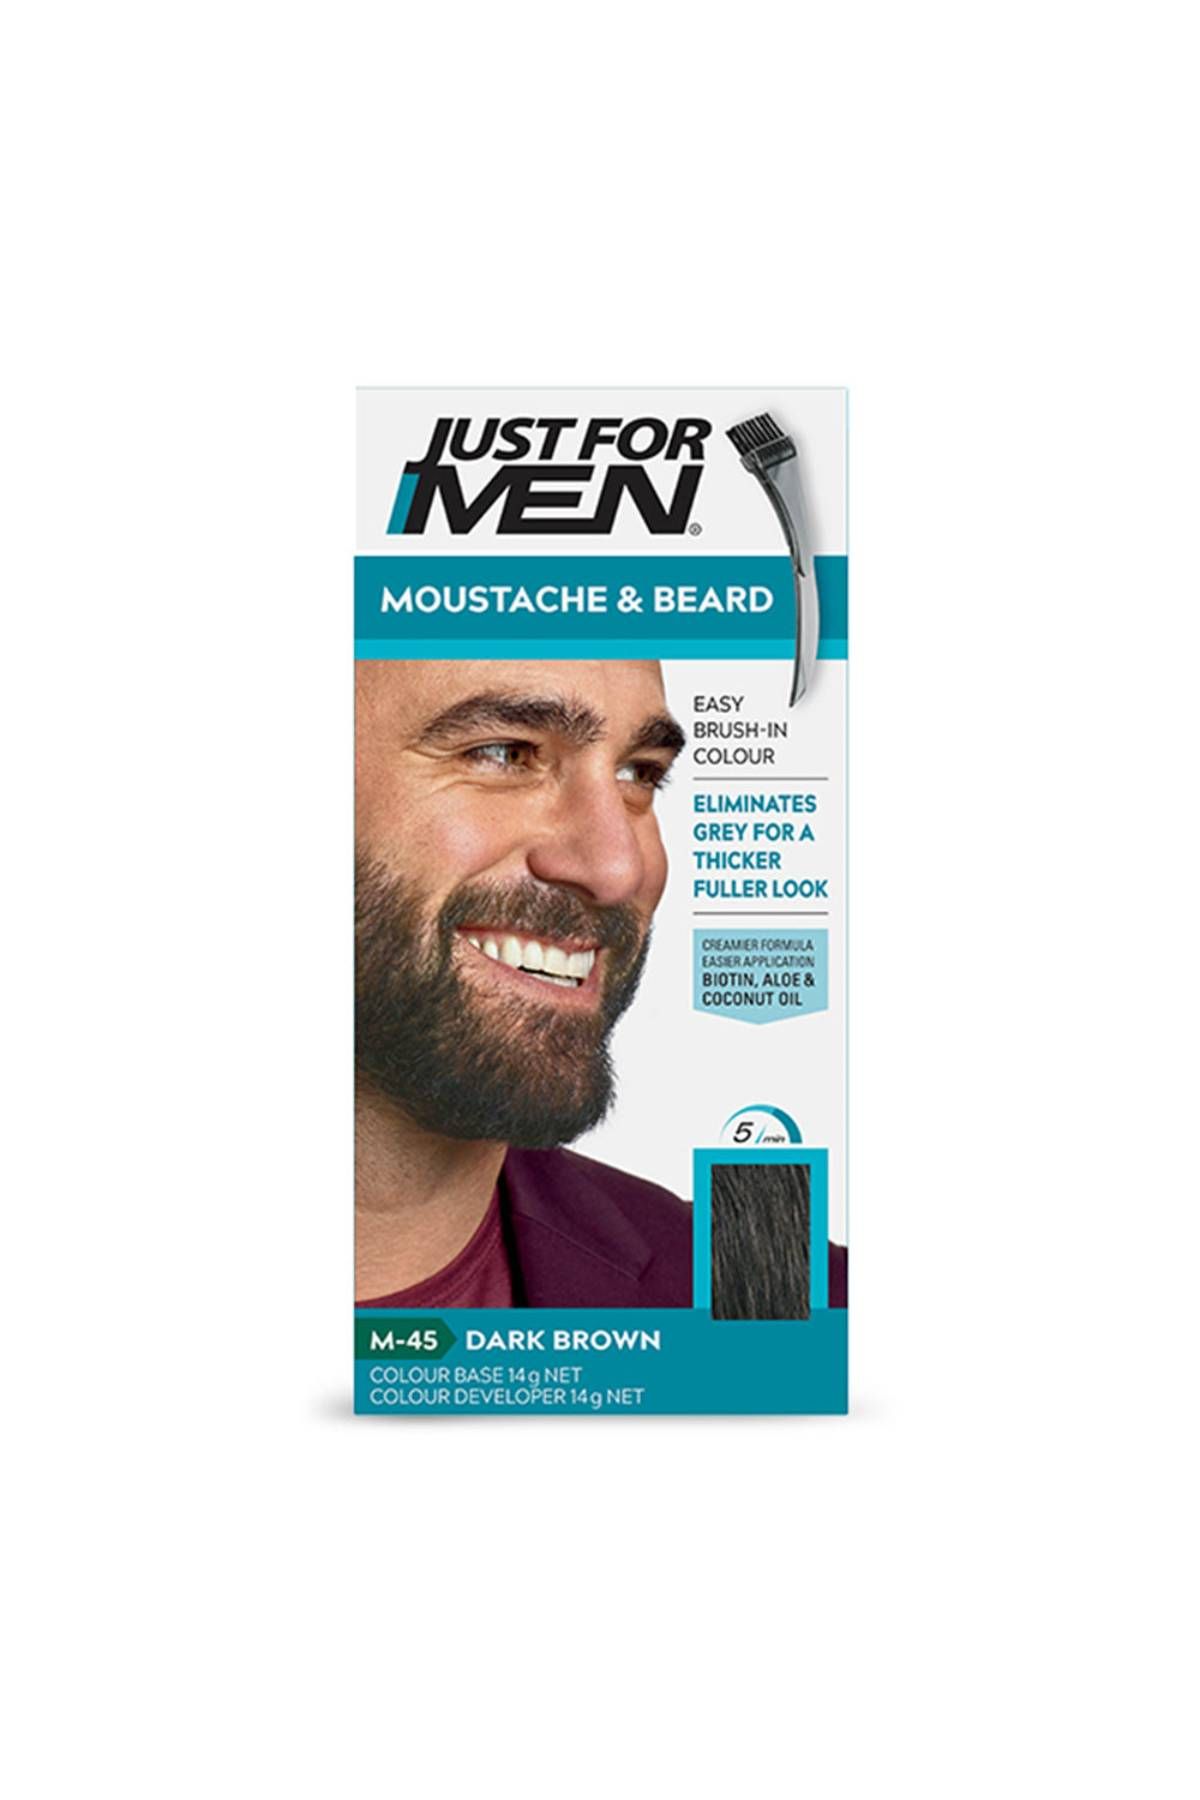 Just For Men - Mustache & Beard Color - Dark Brown